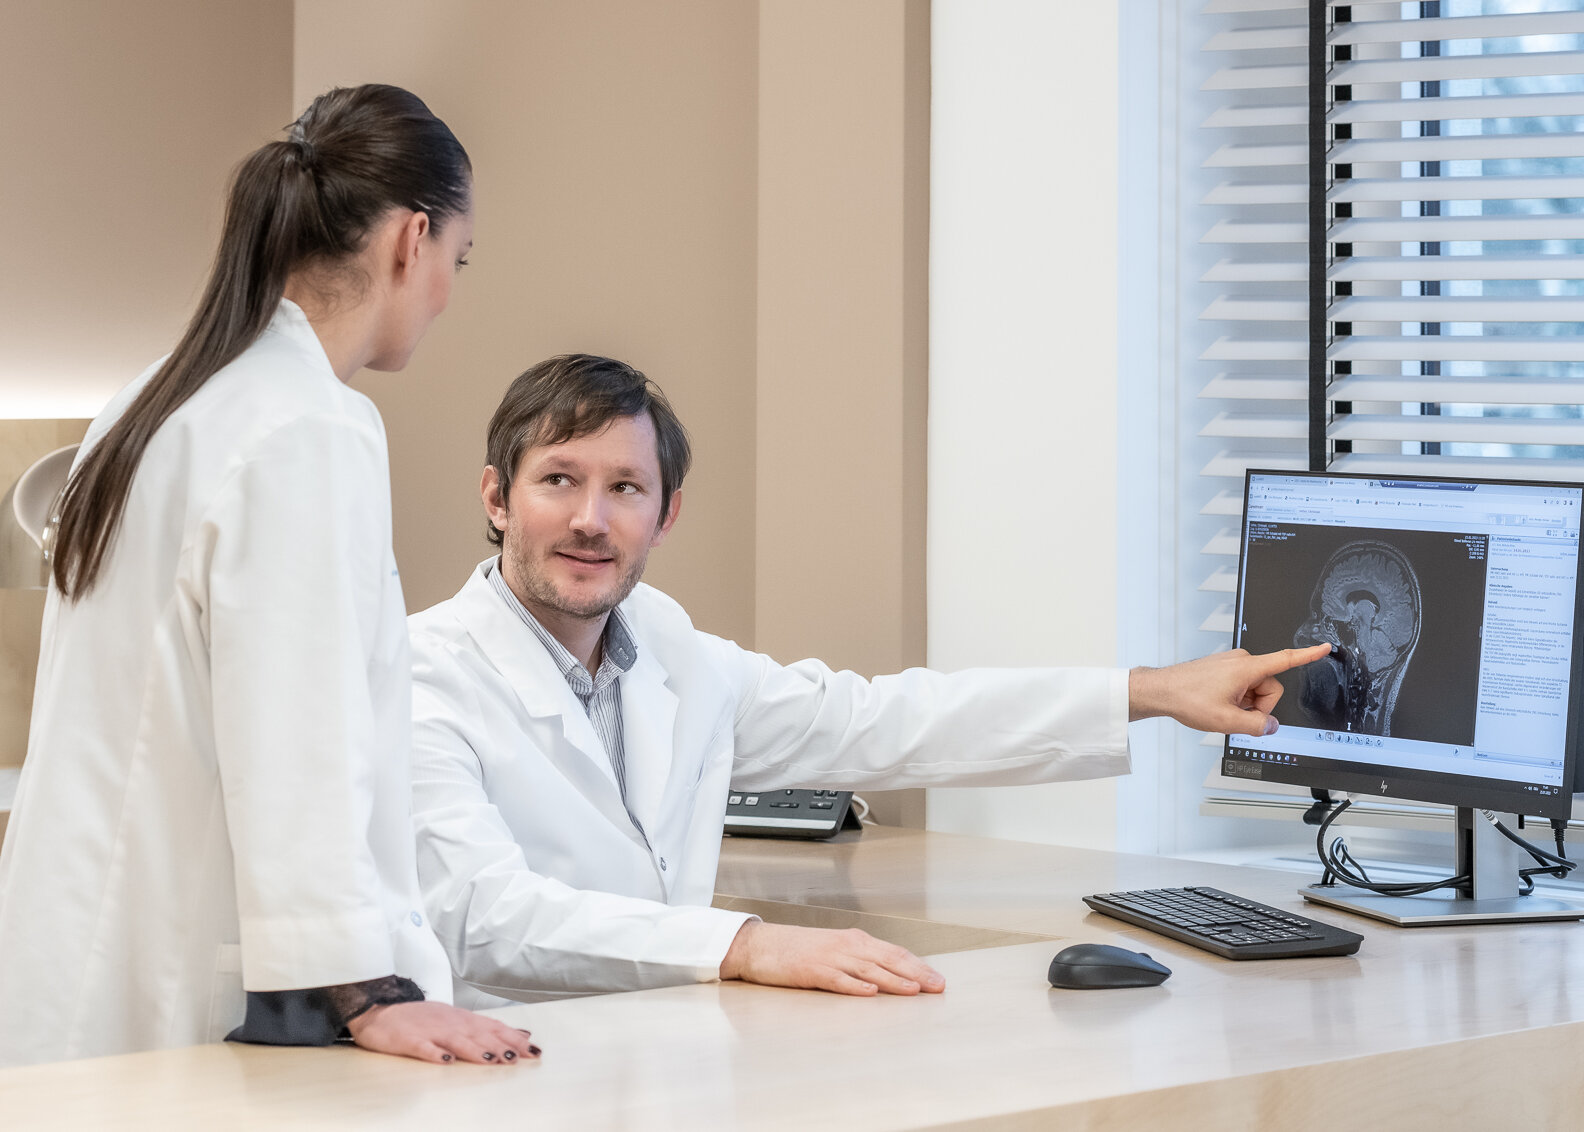 Der Neurologe, Dr. Nikolai Pfender zeigt einer Mitarbeiterin etwas auf seinem Bildschirm.